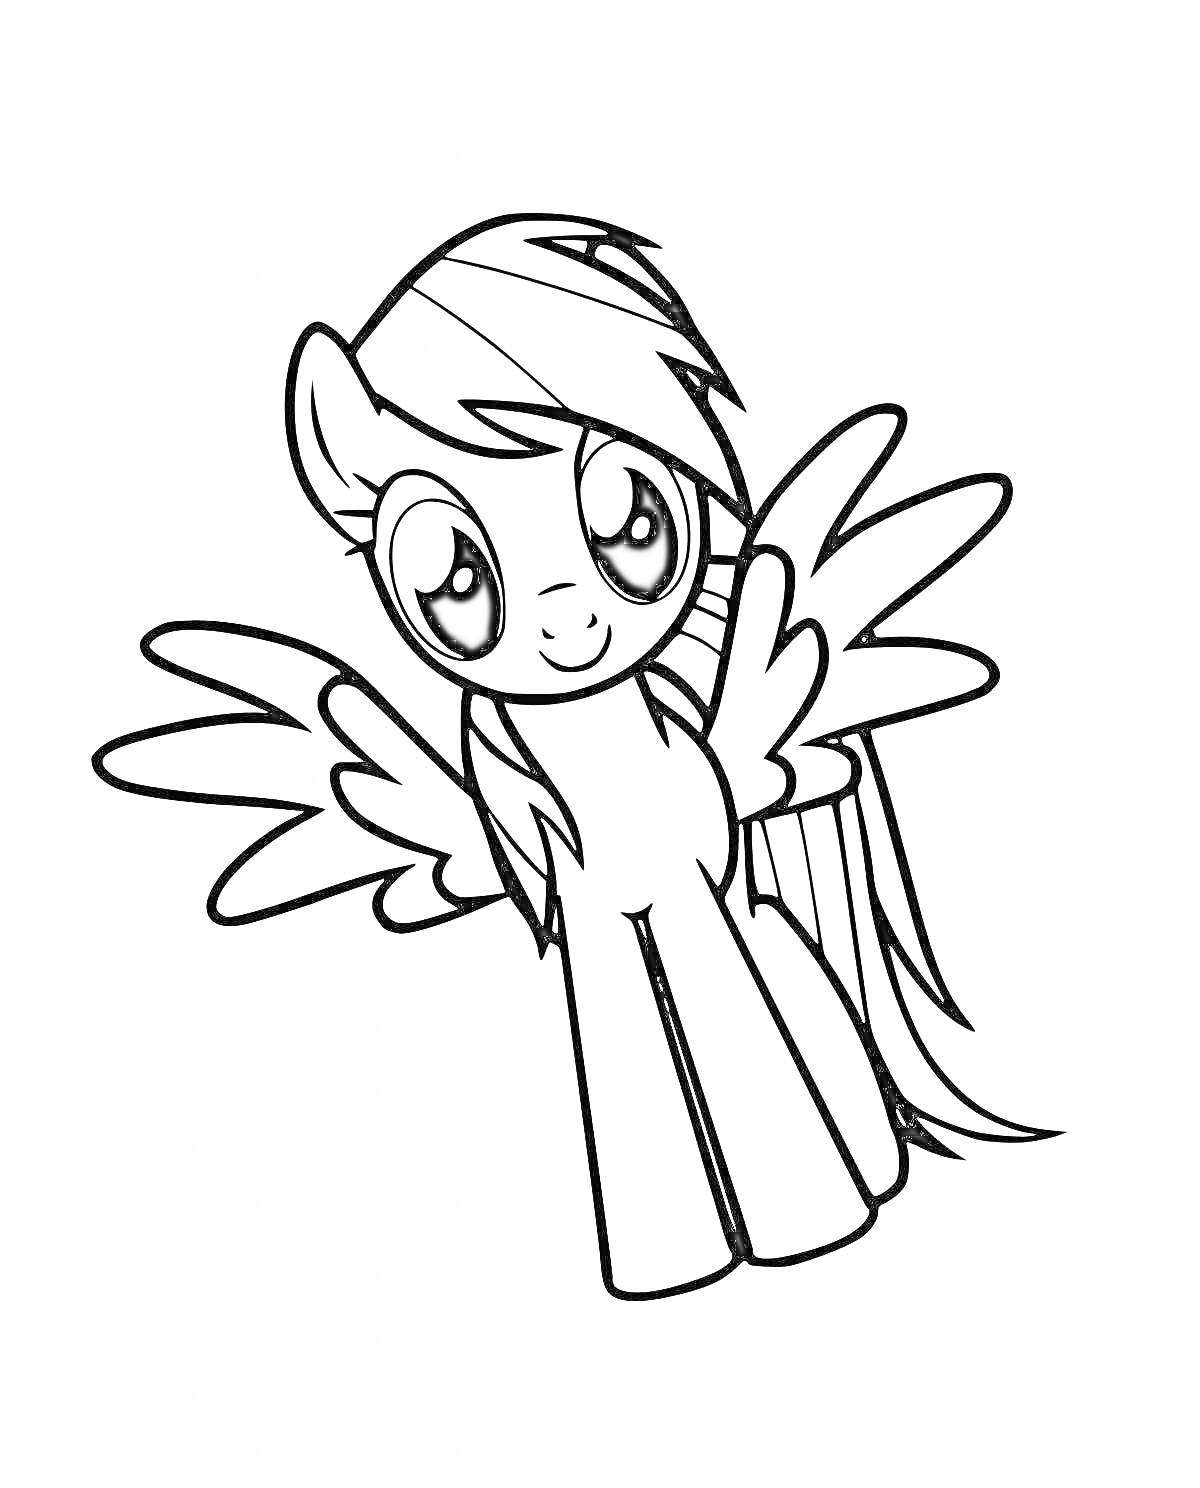 Раскраска Пони с крыльями и полосатой гривой из мультфильма, расправившая крылья, с милым выражением лица